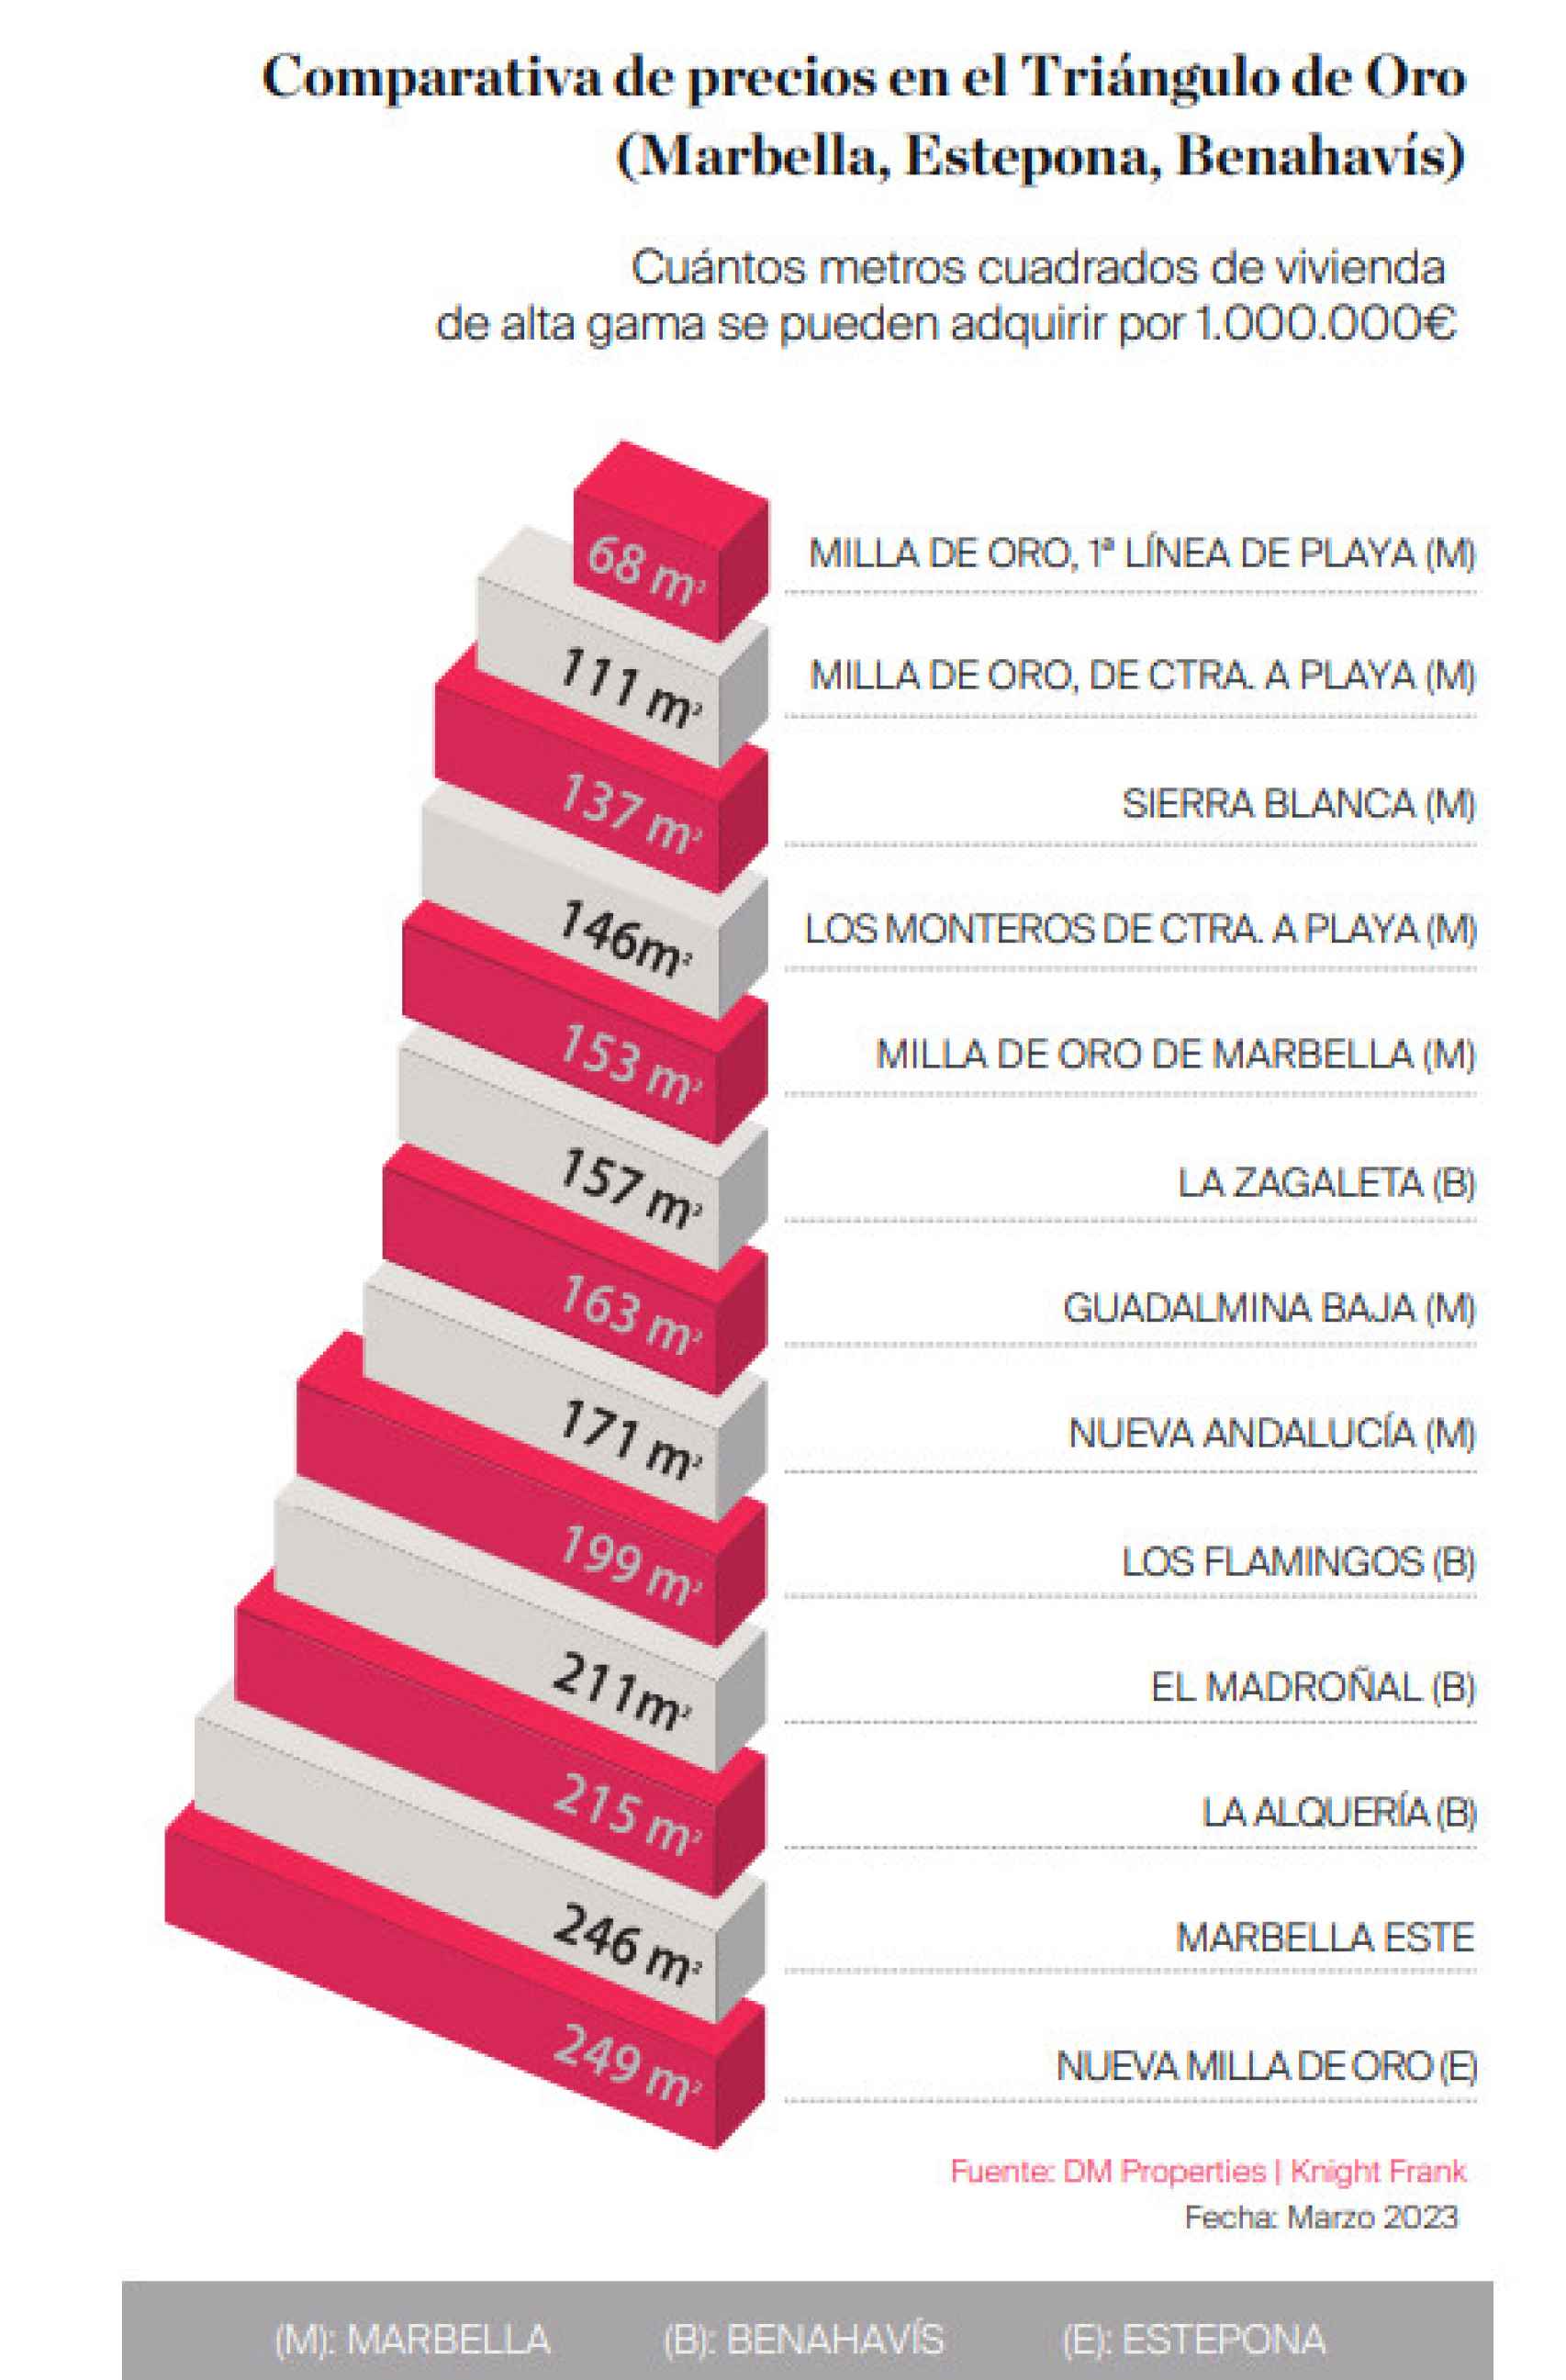 Comparativa de los metros cuadrados de vivienda de alta gama que puedes comprar con 1 millón de euros.